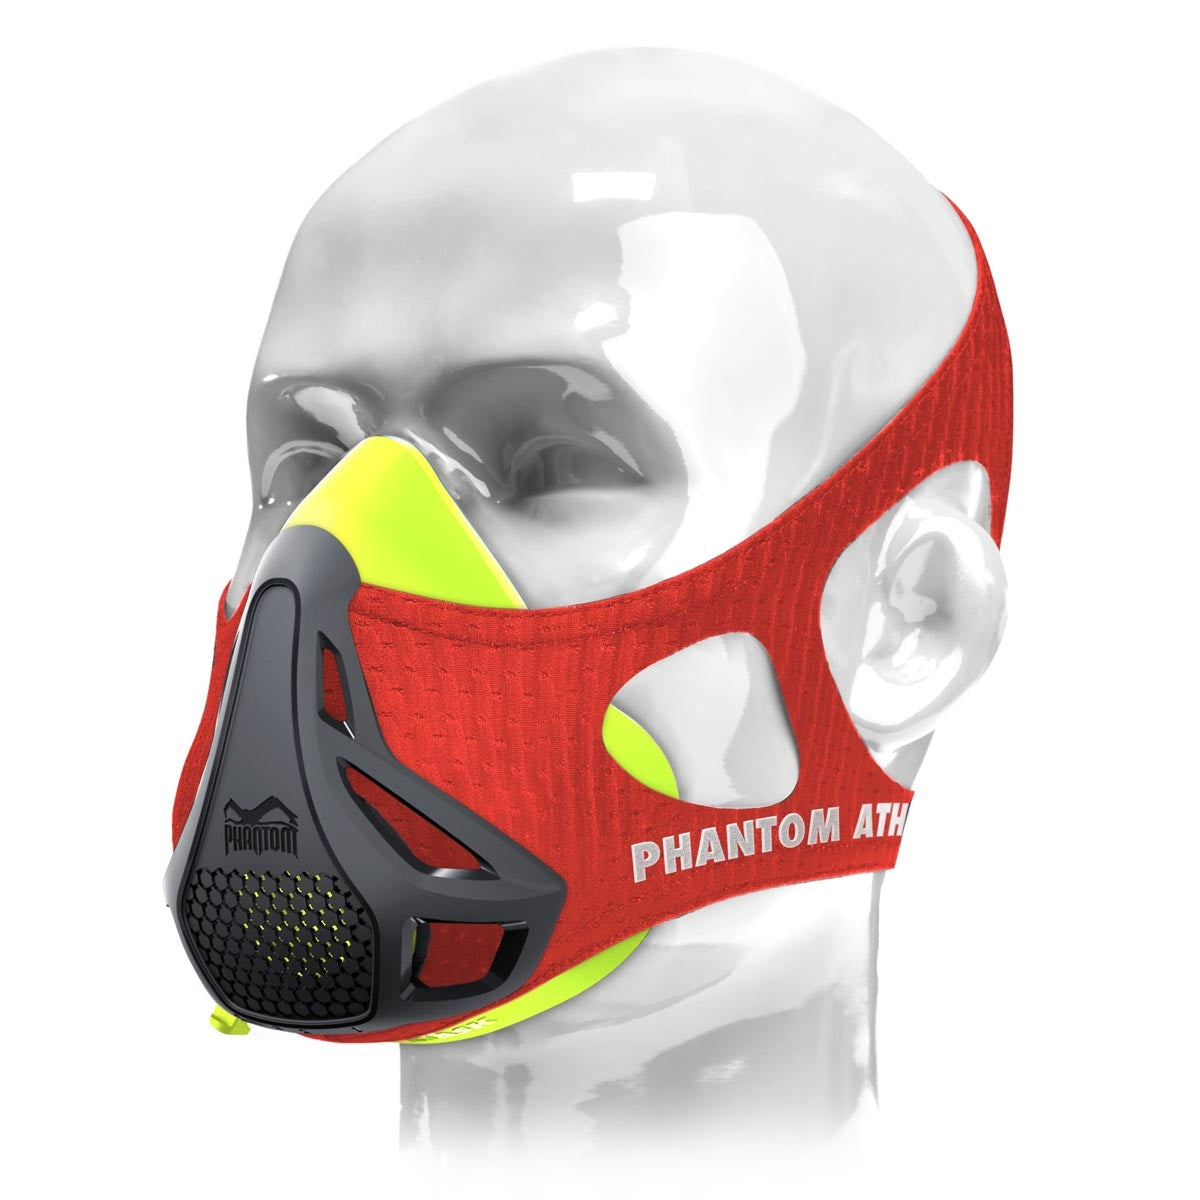 Die Phantom Trainingsmaske in der Mystery Version. Lass dich von der Farbe überraschen. Ideales Trainingsgerät um deine Fitness auf das nächste Level zu heben. Hier in Rot/Neon. 